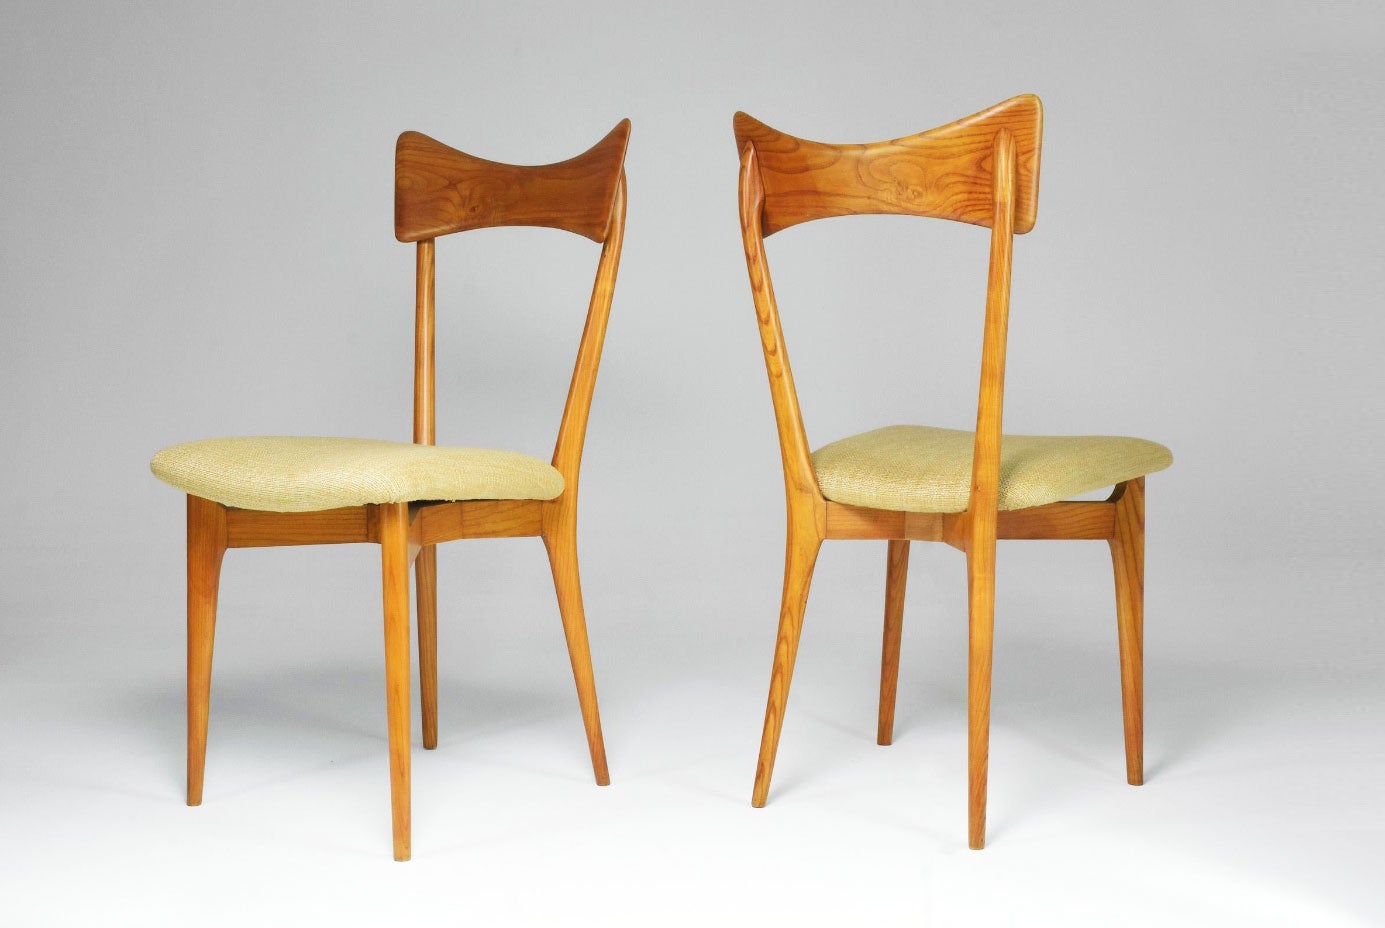 Deux chaises en hêtre de 1954 conçues par Ico et Luisa Parisi pour Ariberto Colombo